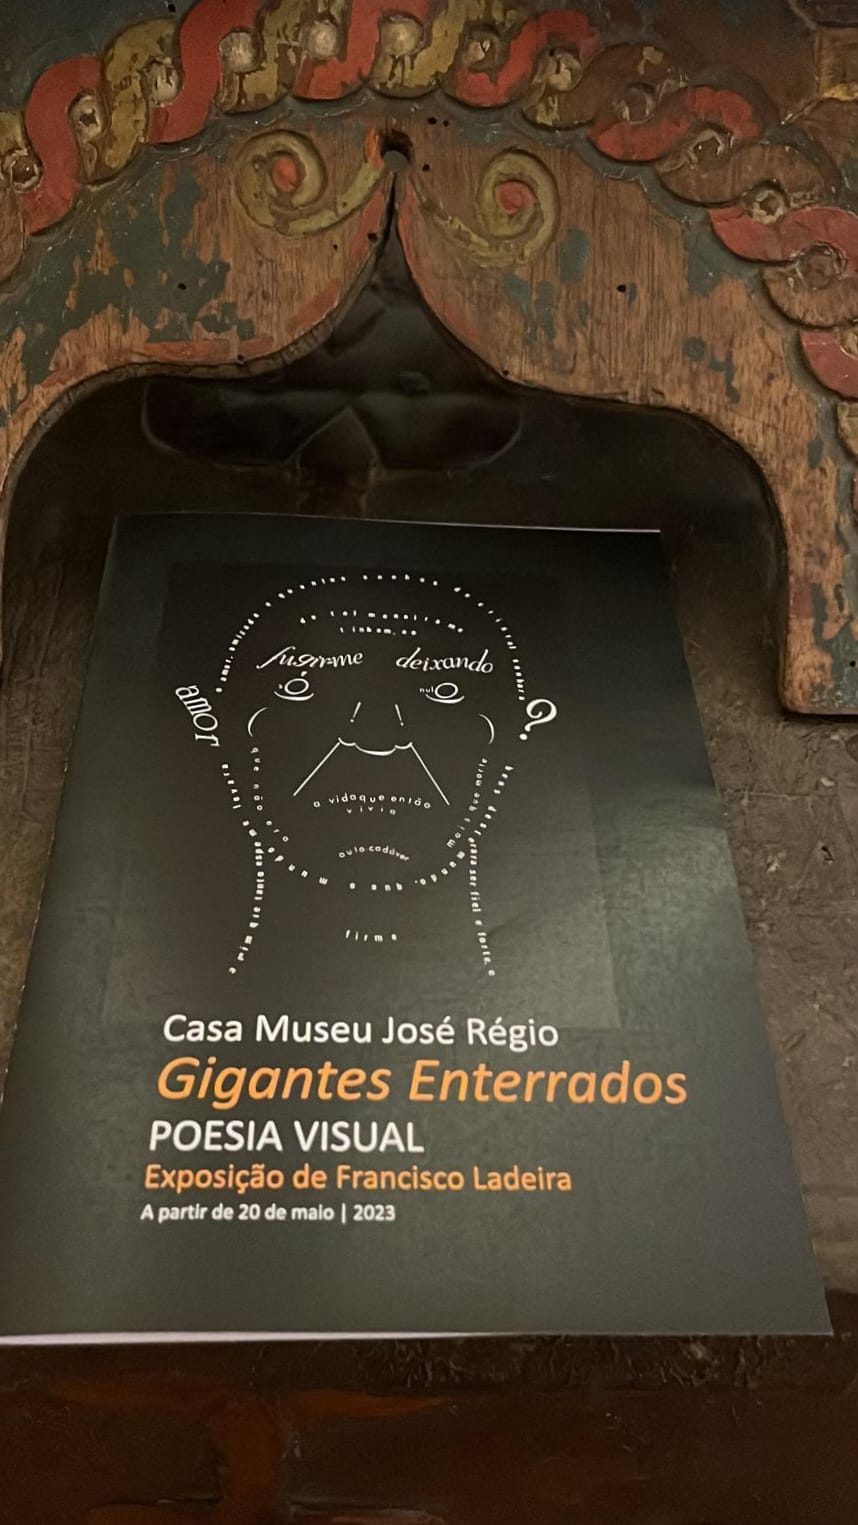 Exposição de Francisco Ladeira: “Gigantes Enterrados: Poesia Visual” inaugurada na Casa-Museu José Régio